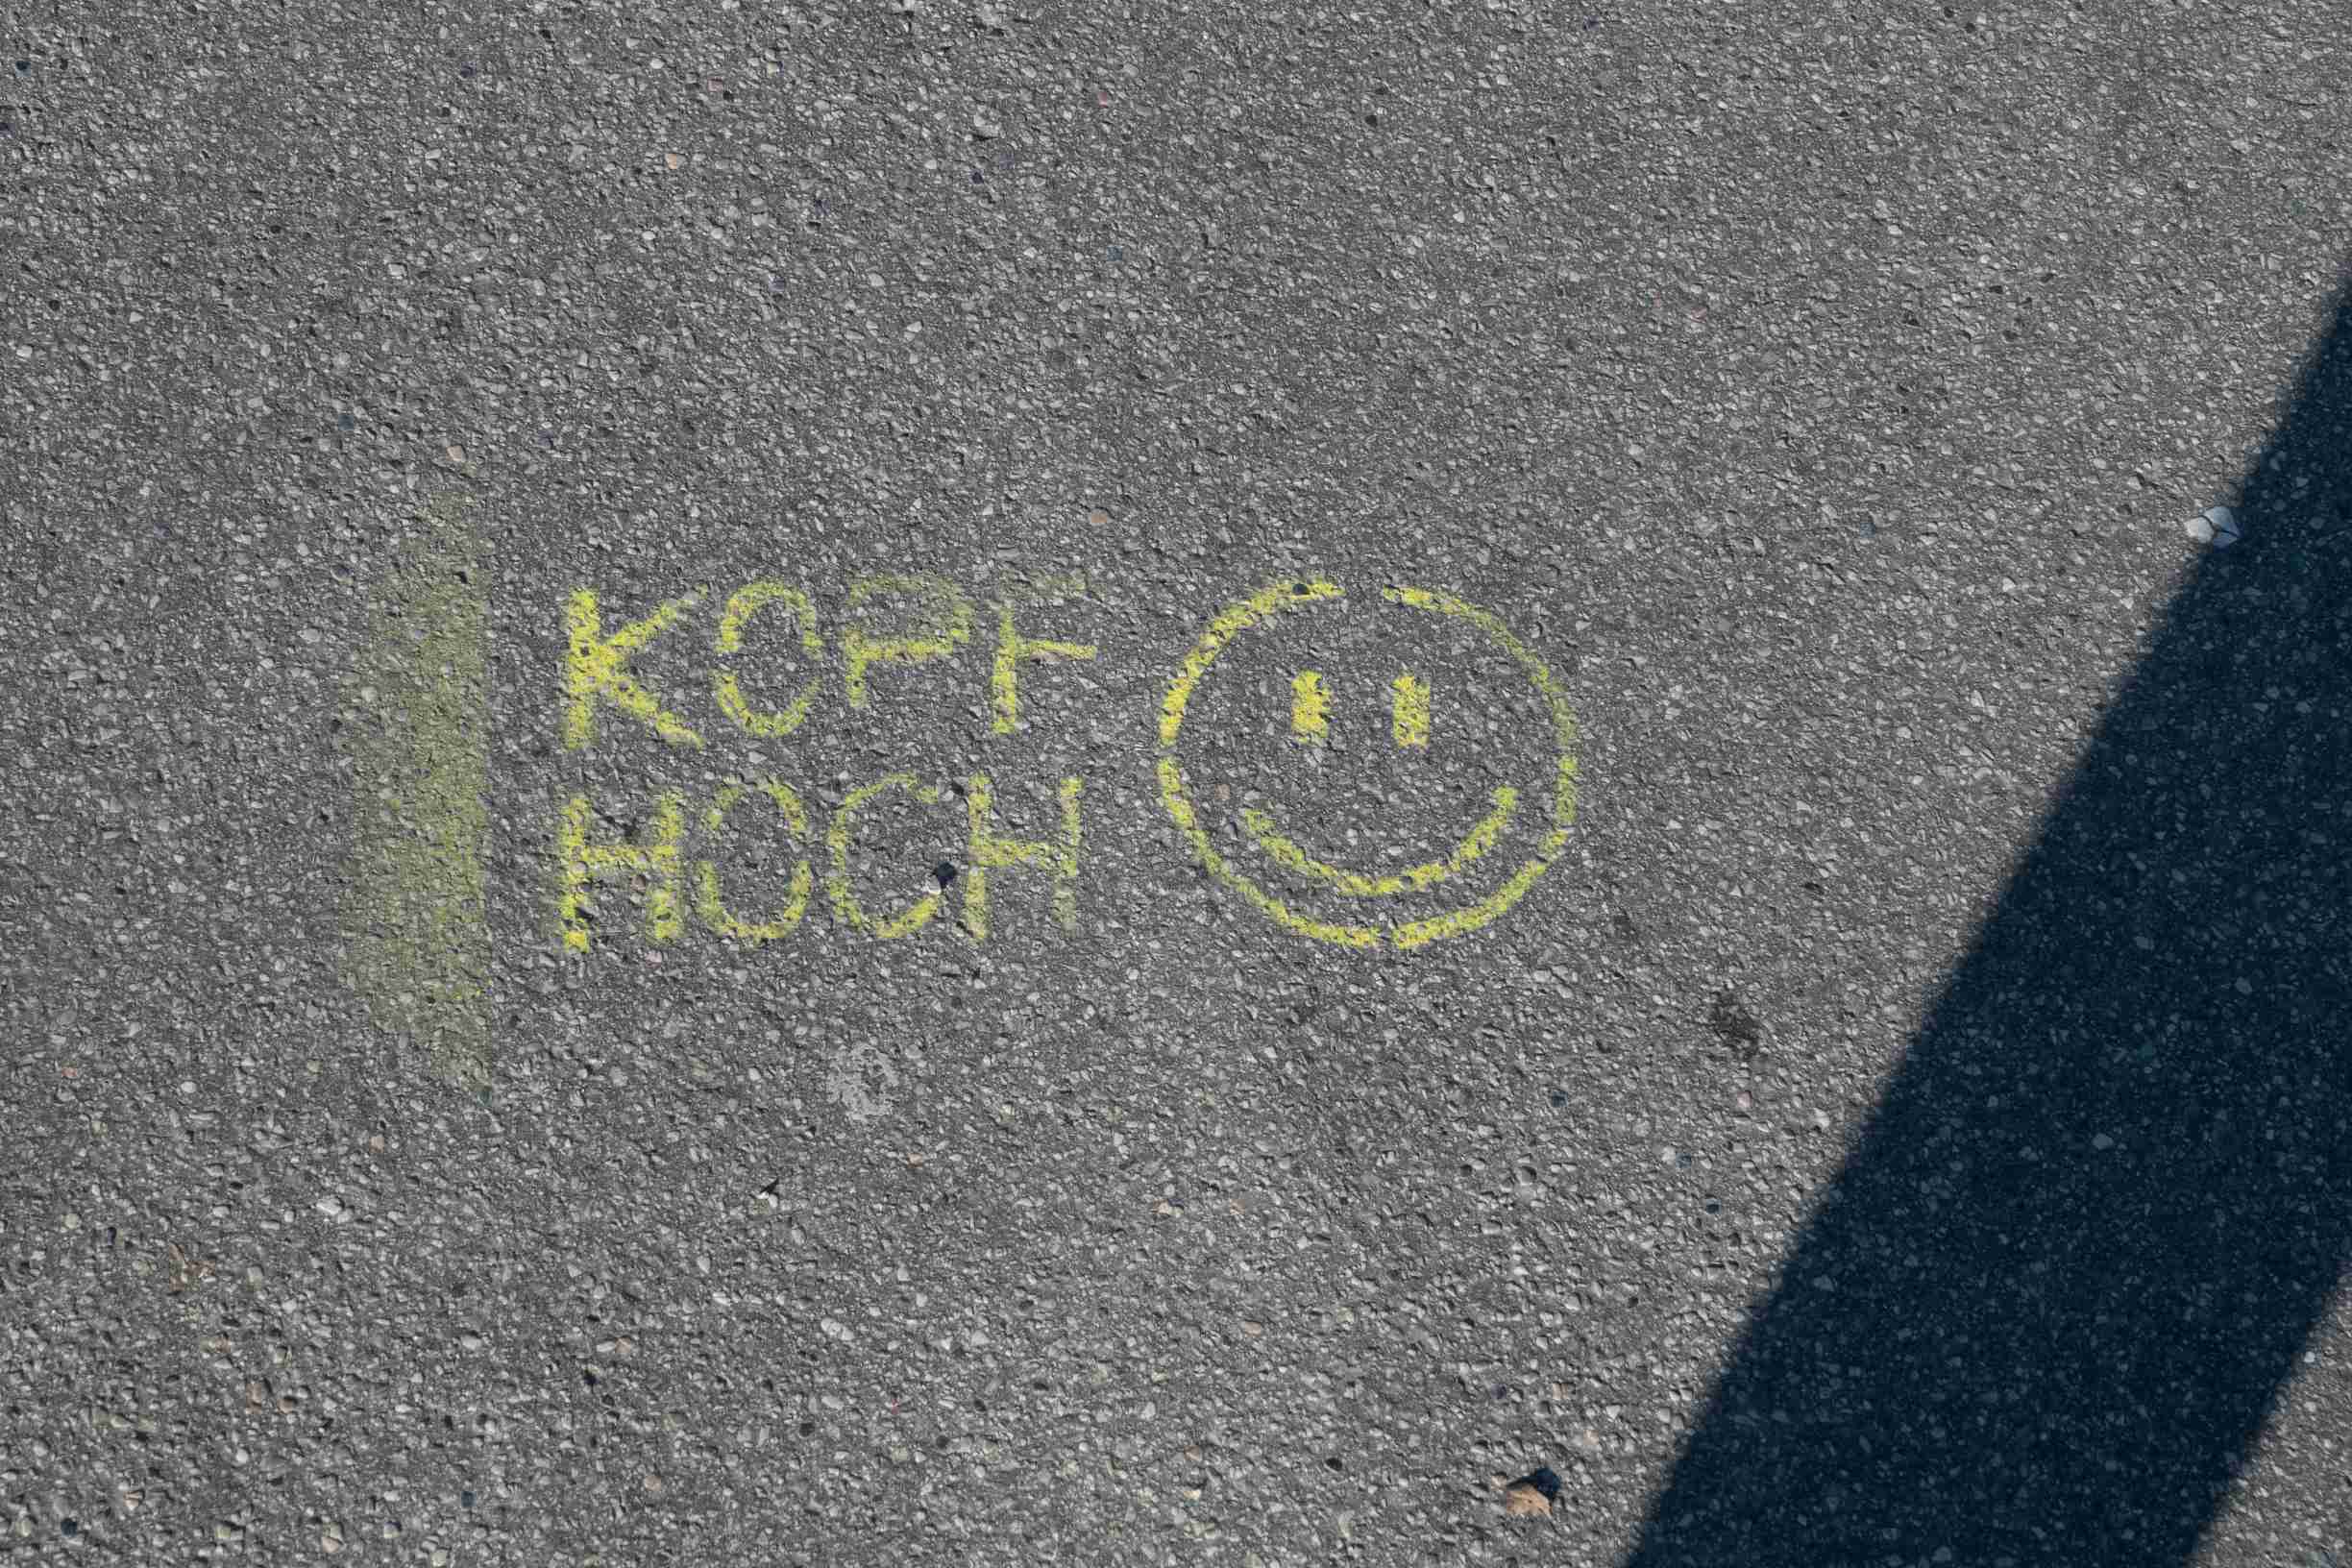 Marquage jaune au sol 'Souriez' en allemand (Kopf hoch)